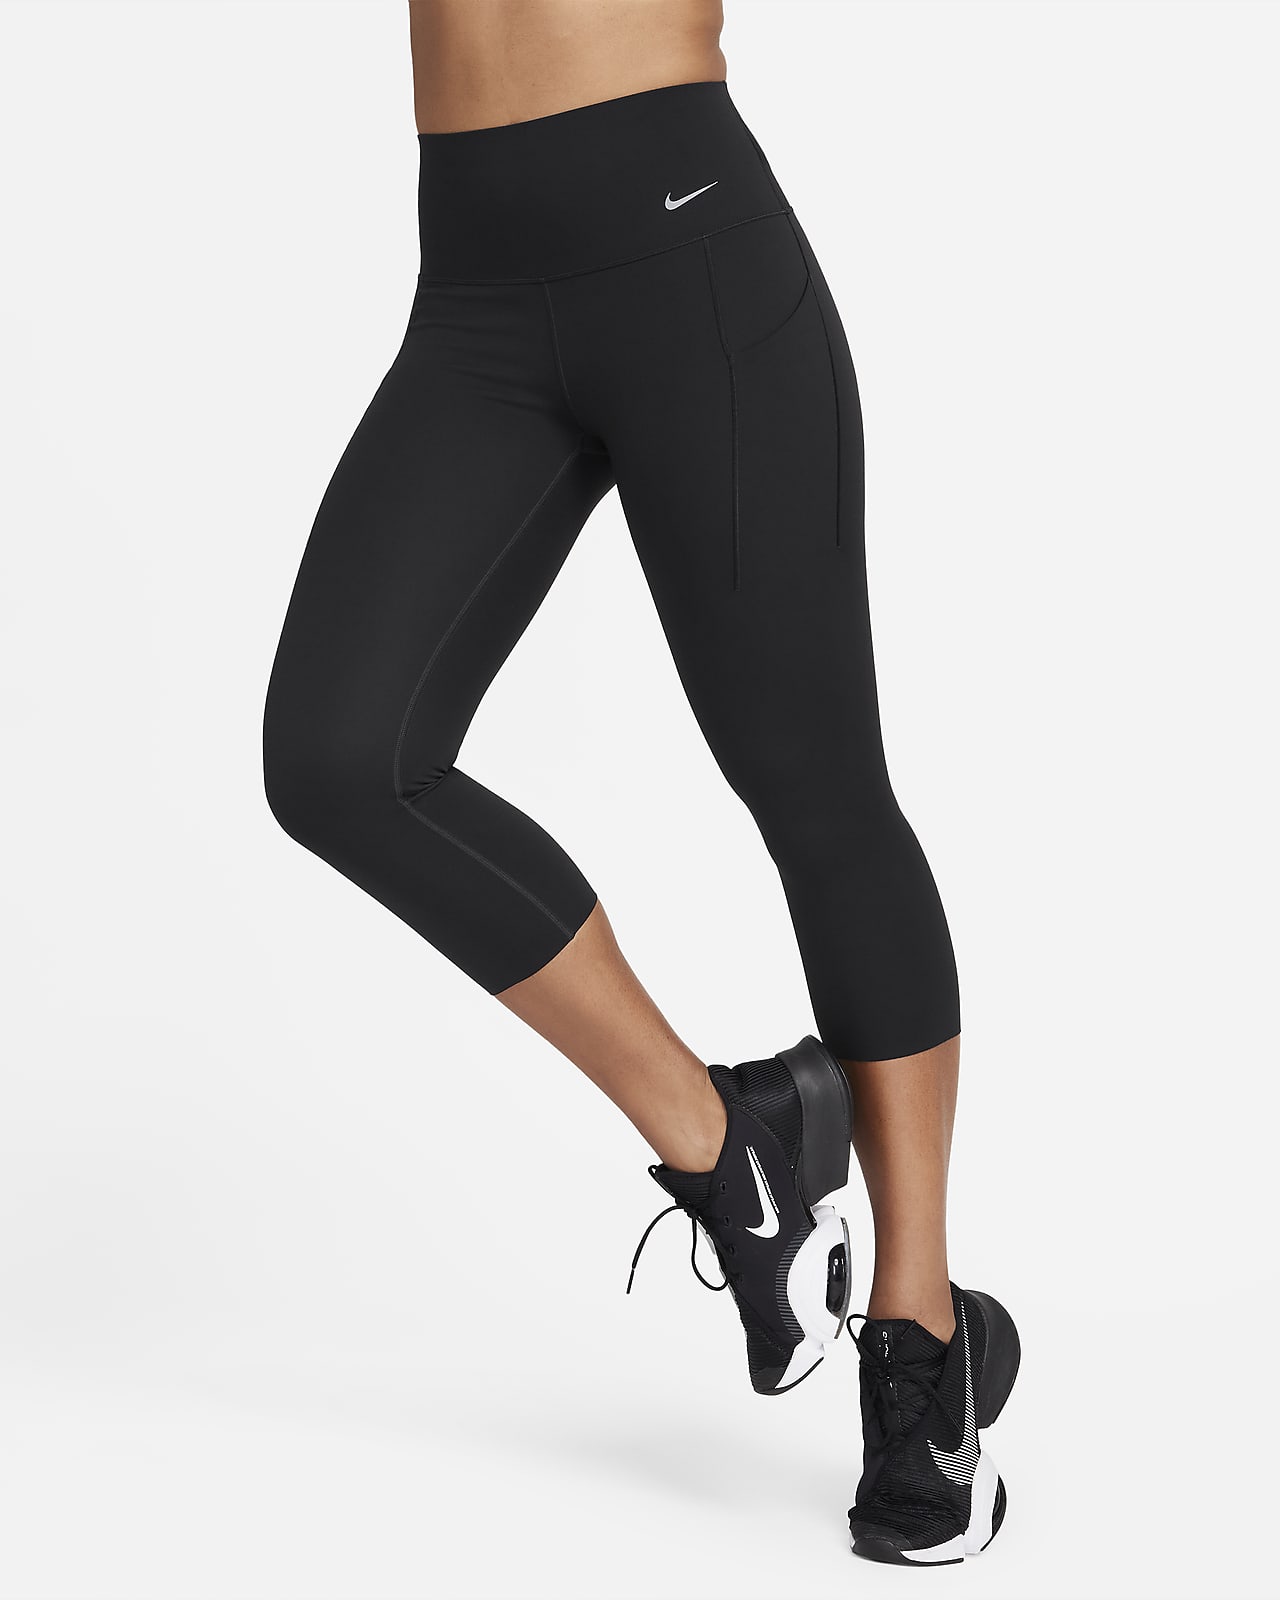 Le legging court insertion filet, Nike, Leggings sport pour Femme